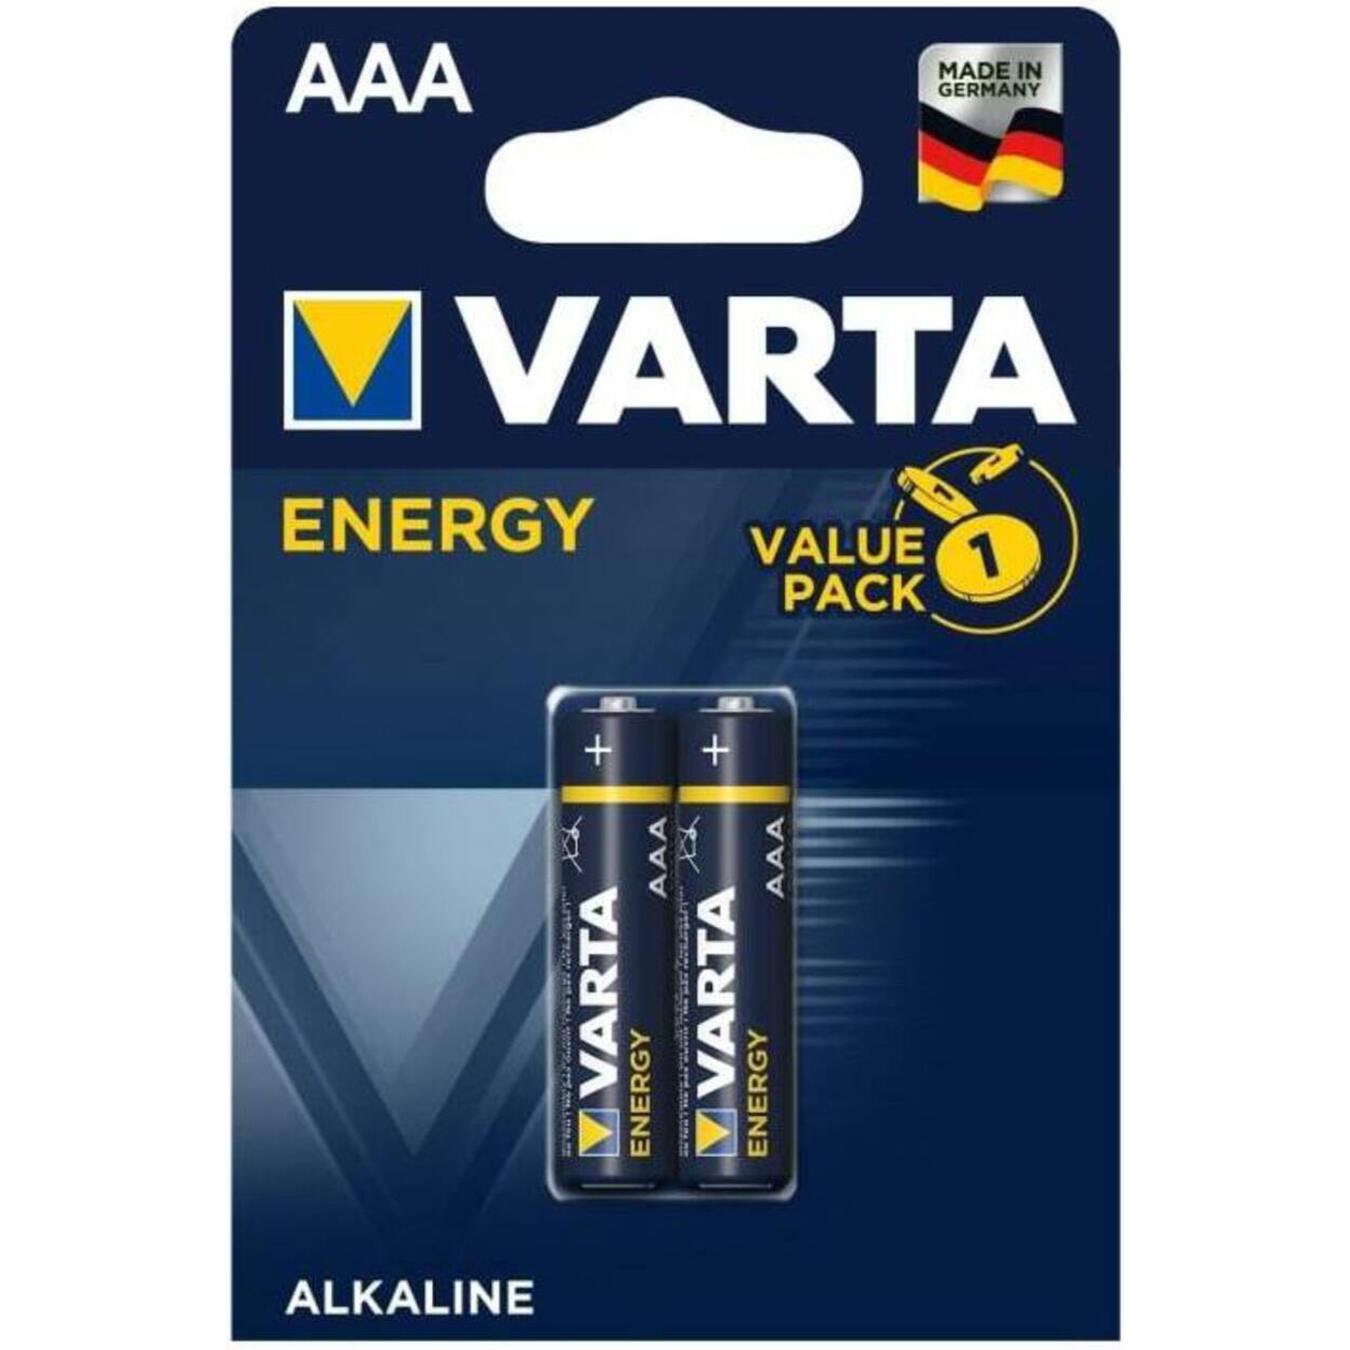 VARTA Energy AAA BLI 2 battery 2